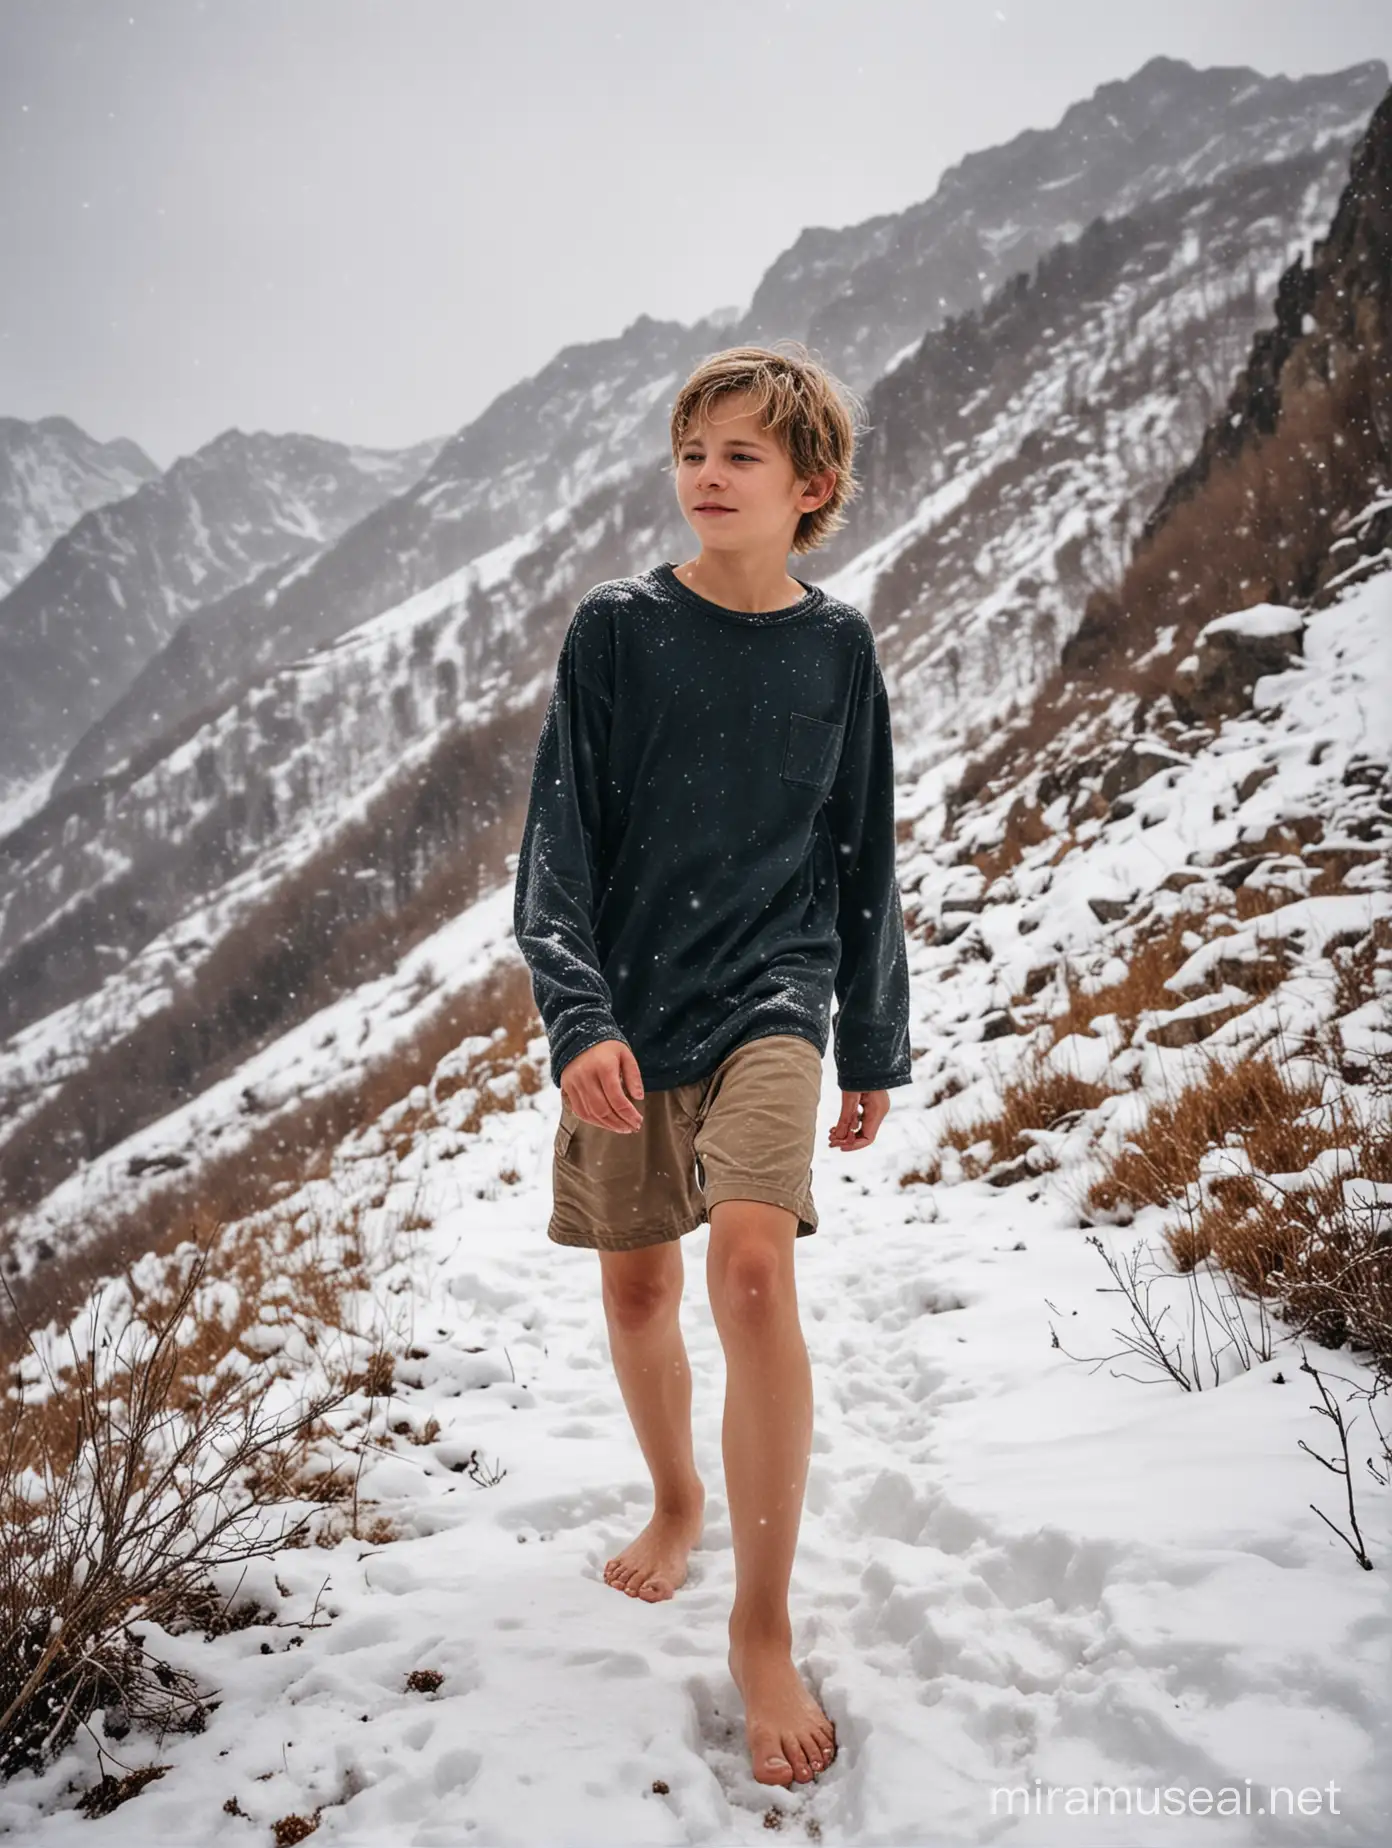 Босиком молодой Мальчик 14 лет светлые волосы босые ноги голышом босиком по снегу горы